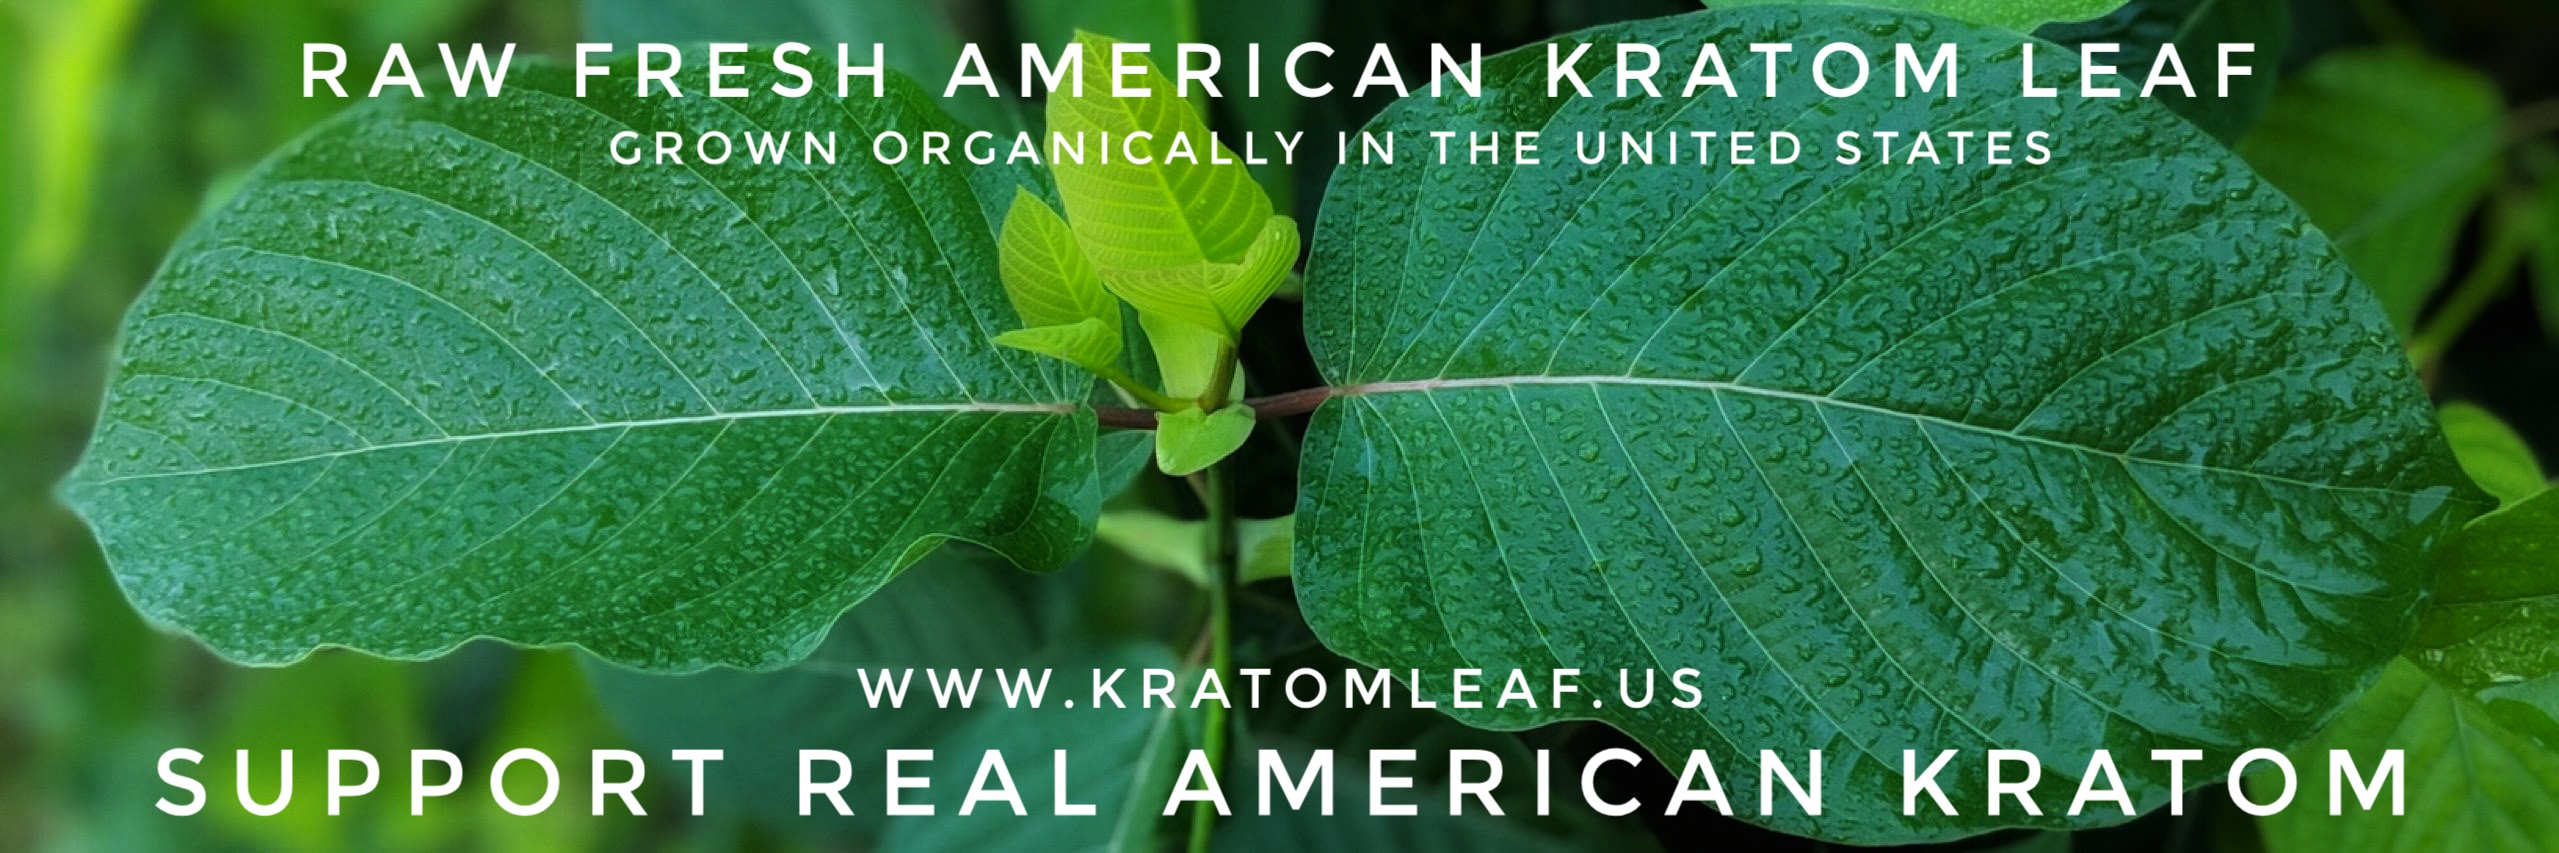 Is American Kratom Legal? 